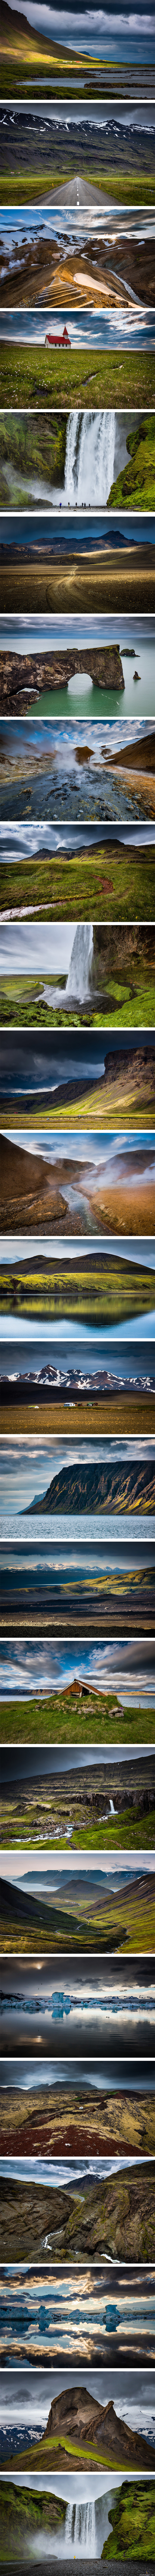 Kuvia Islannista